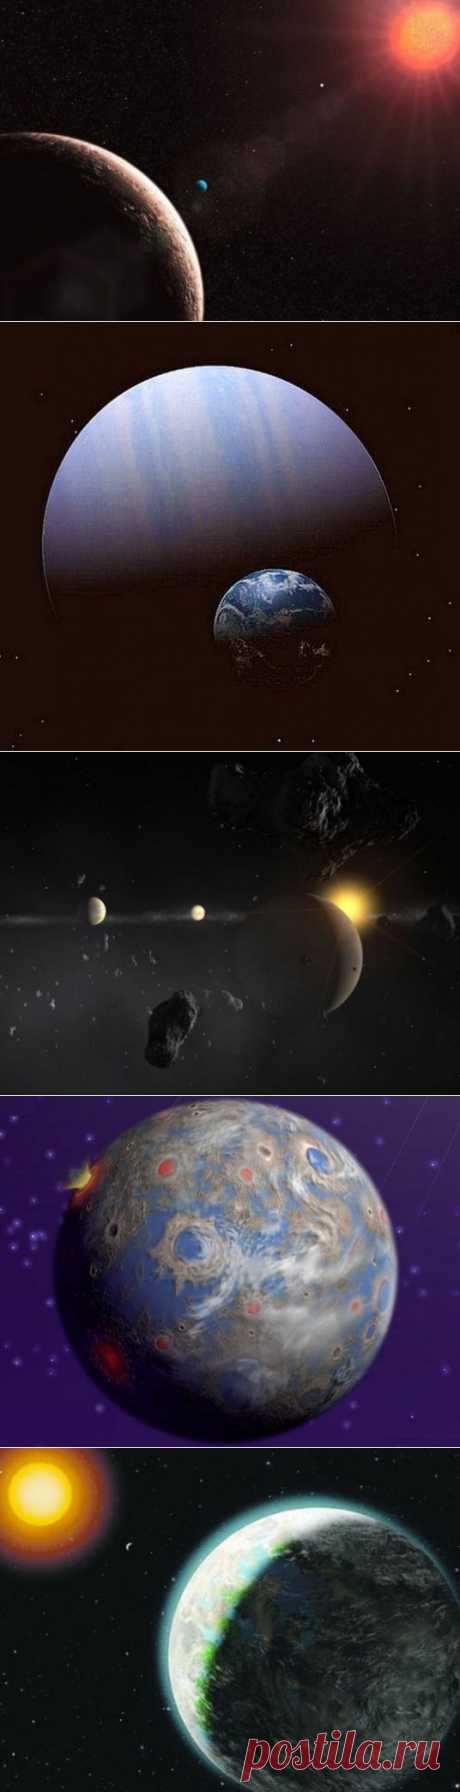 10 планет, похожих на Землю | Наука и техника